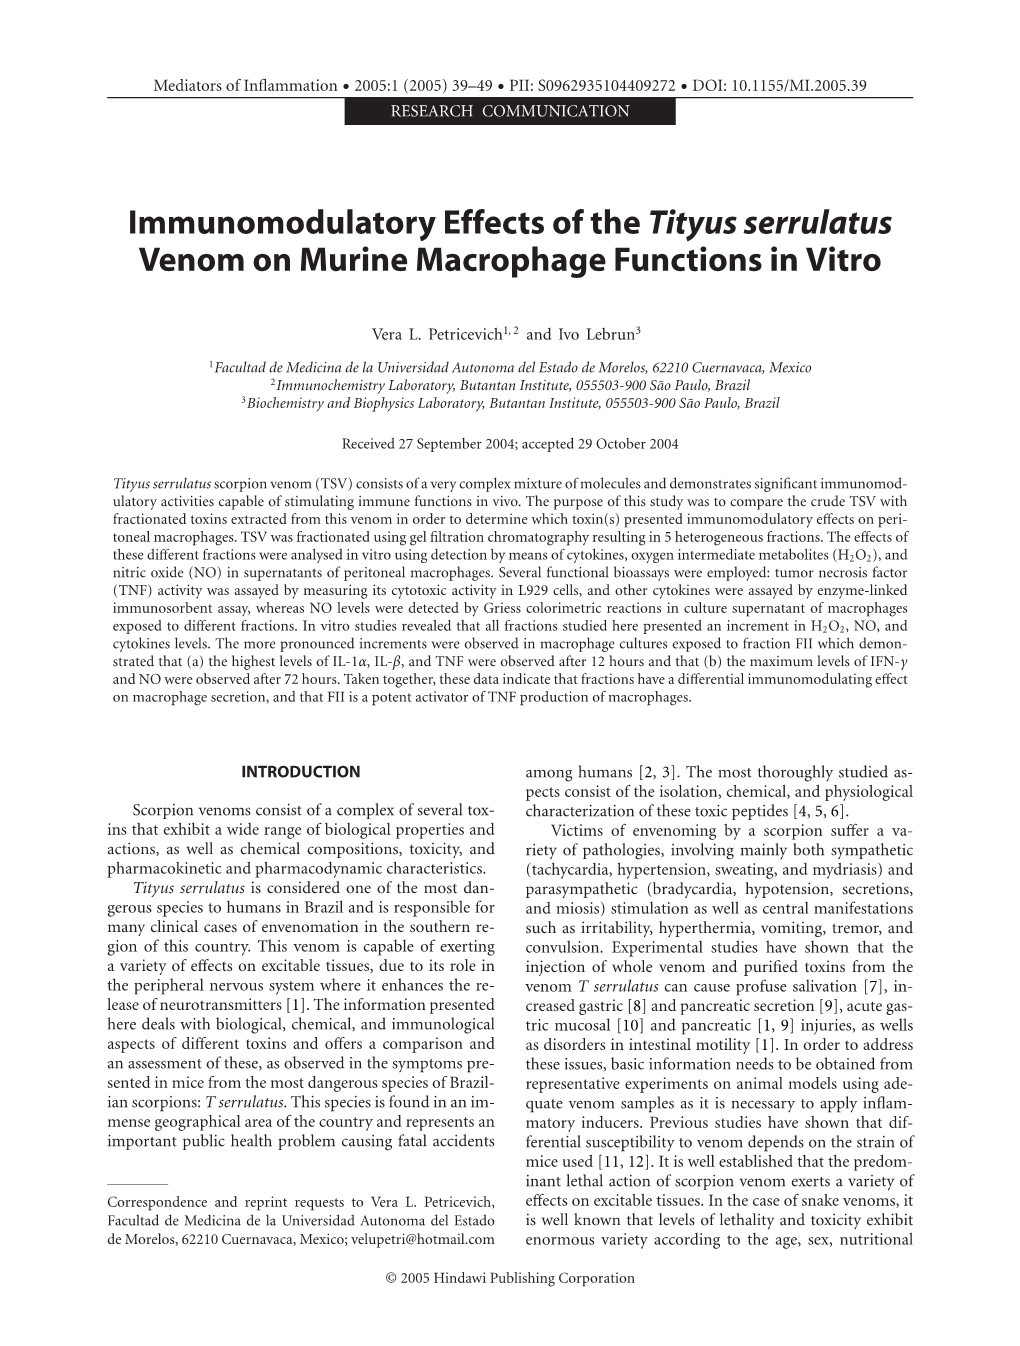 Immunomodulatory Effects of the Tityus Serrulatus Venom on Murine Macrophage Functions in Vitro